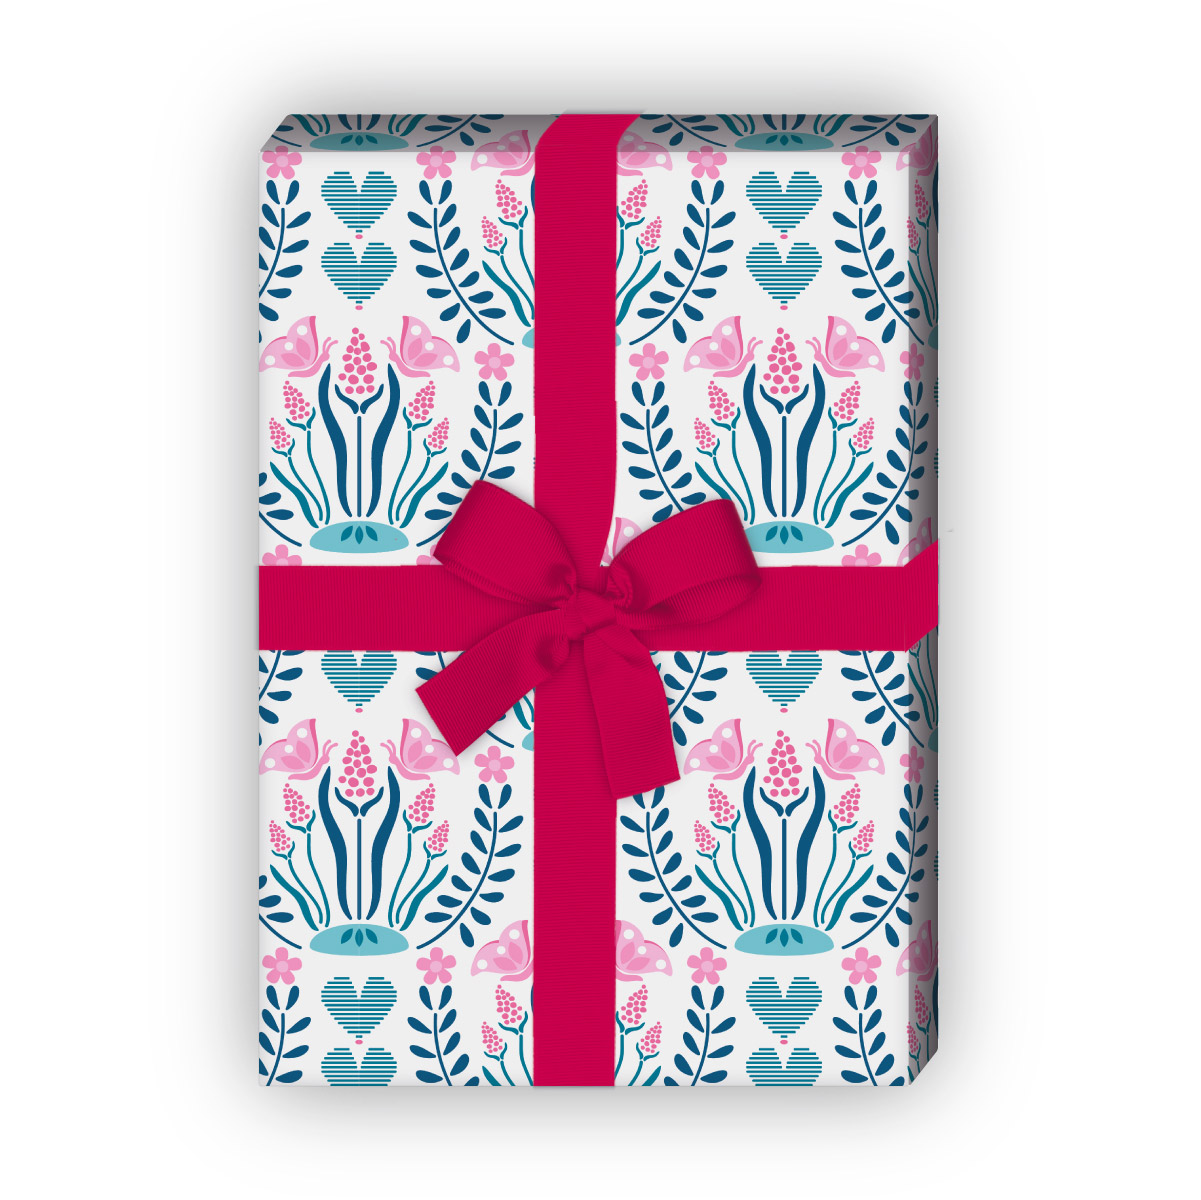 Kartenkaufrausch: Romantisches Blumen Geschenkpapier mit aus unserer florale Papeterie in rosa